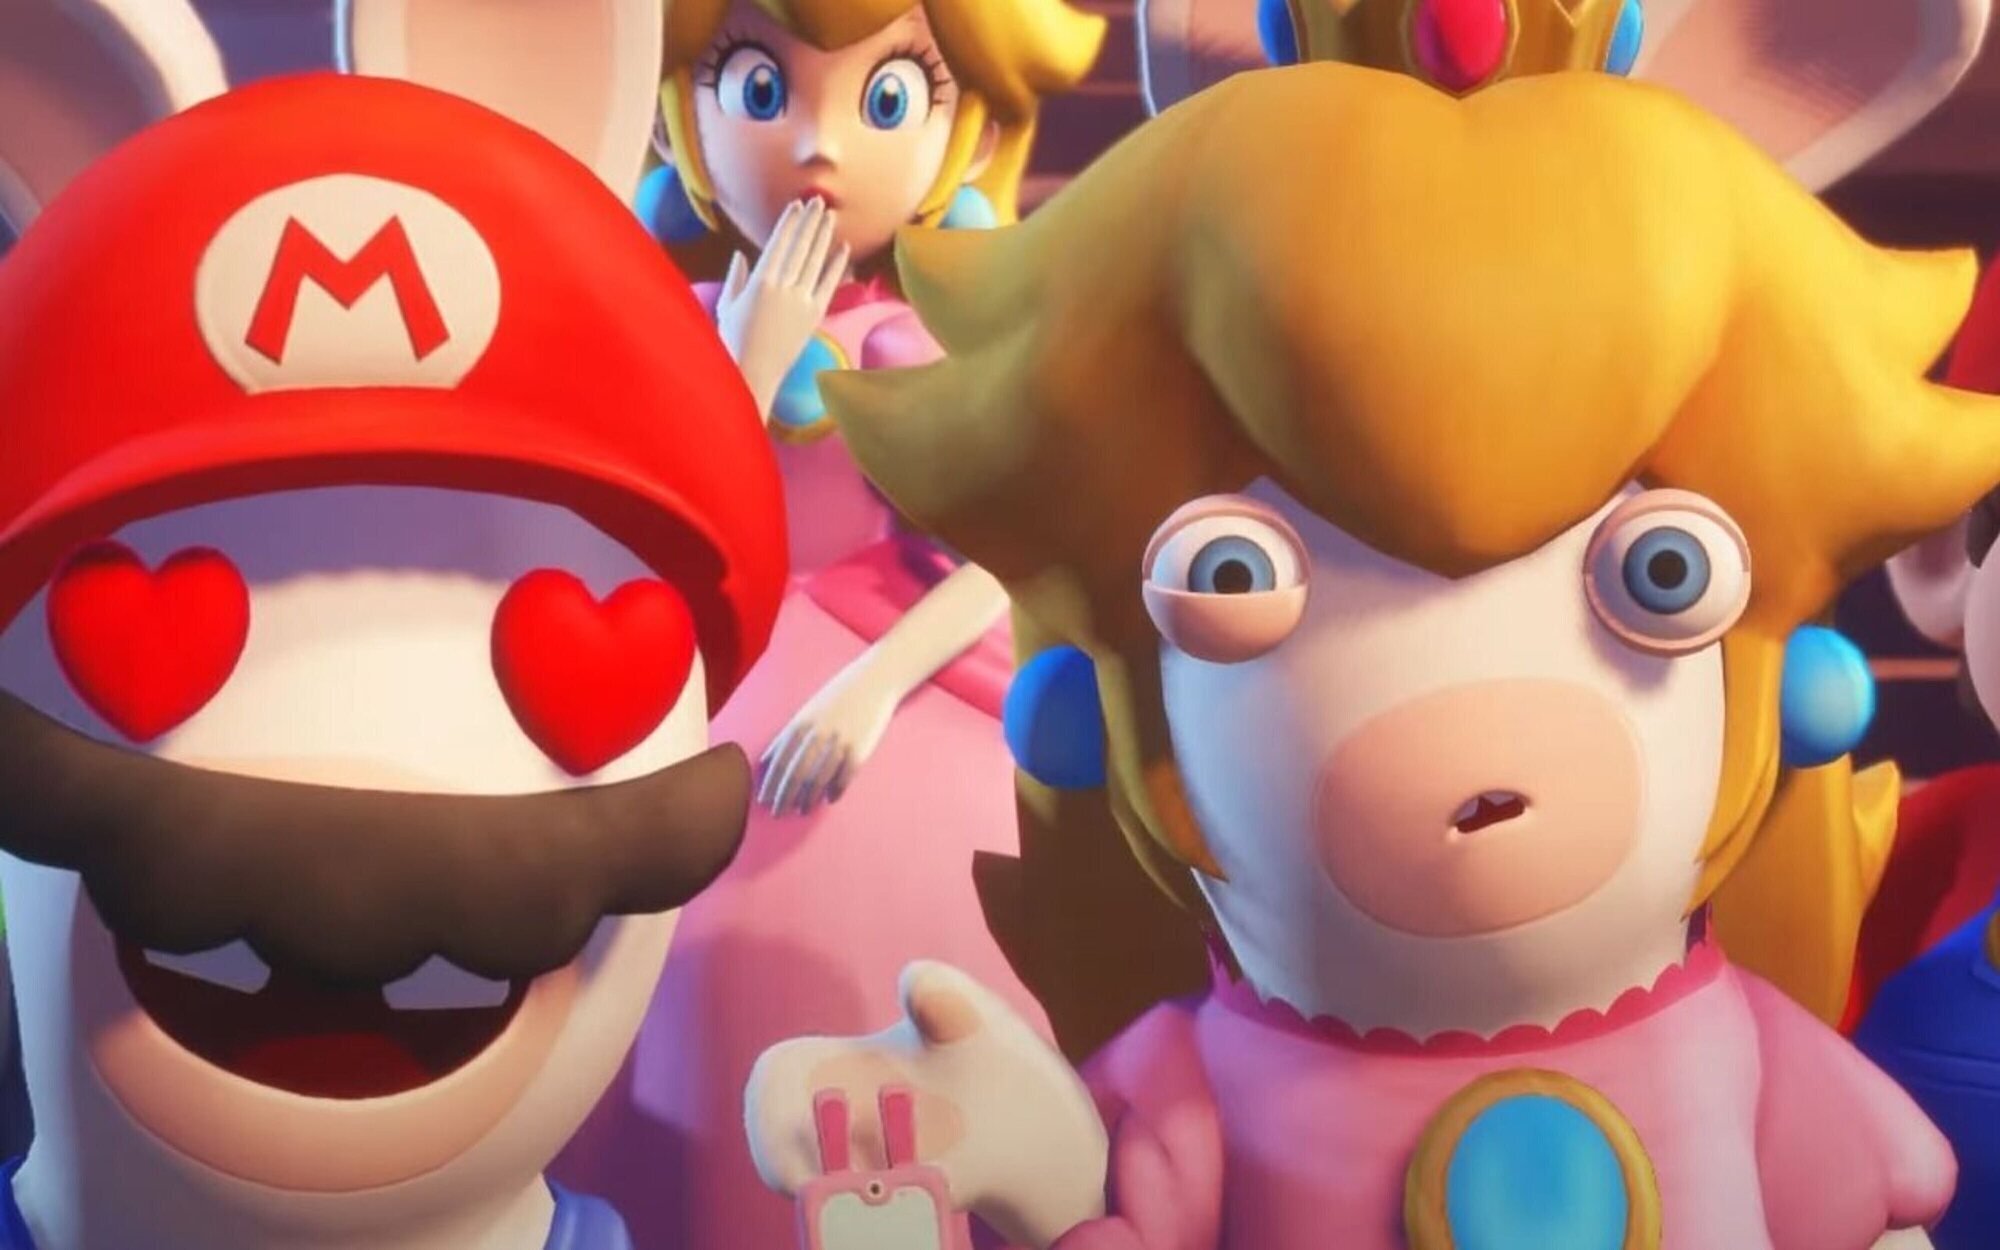 Revelado el peso que ocuparán 'Mario + Rabbids Sparks of Hope' y 'NieR: Automata' en Switch